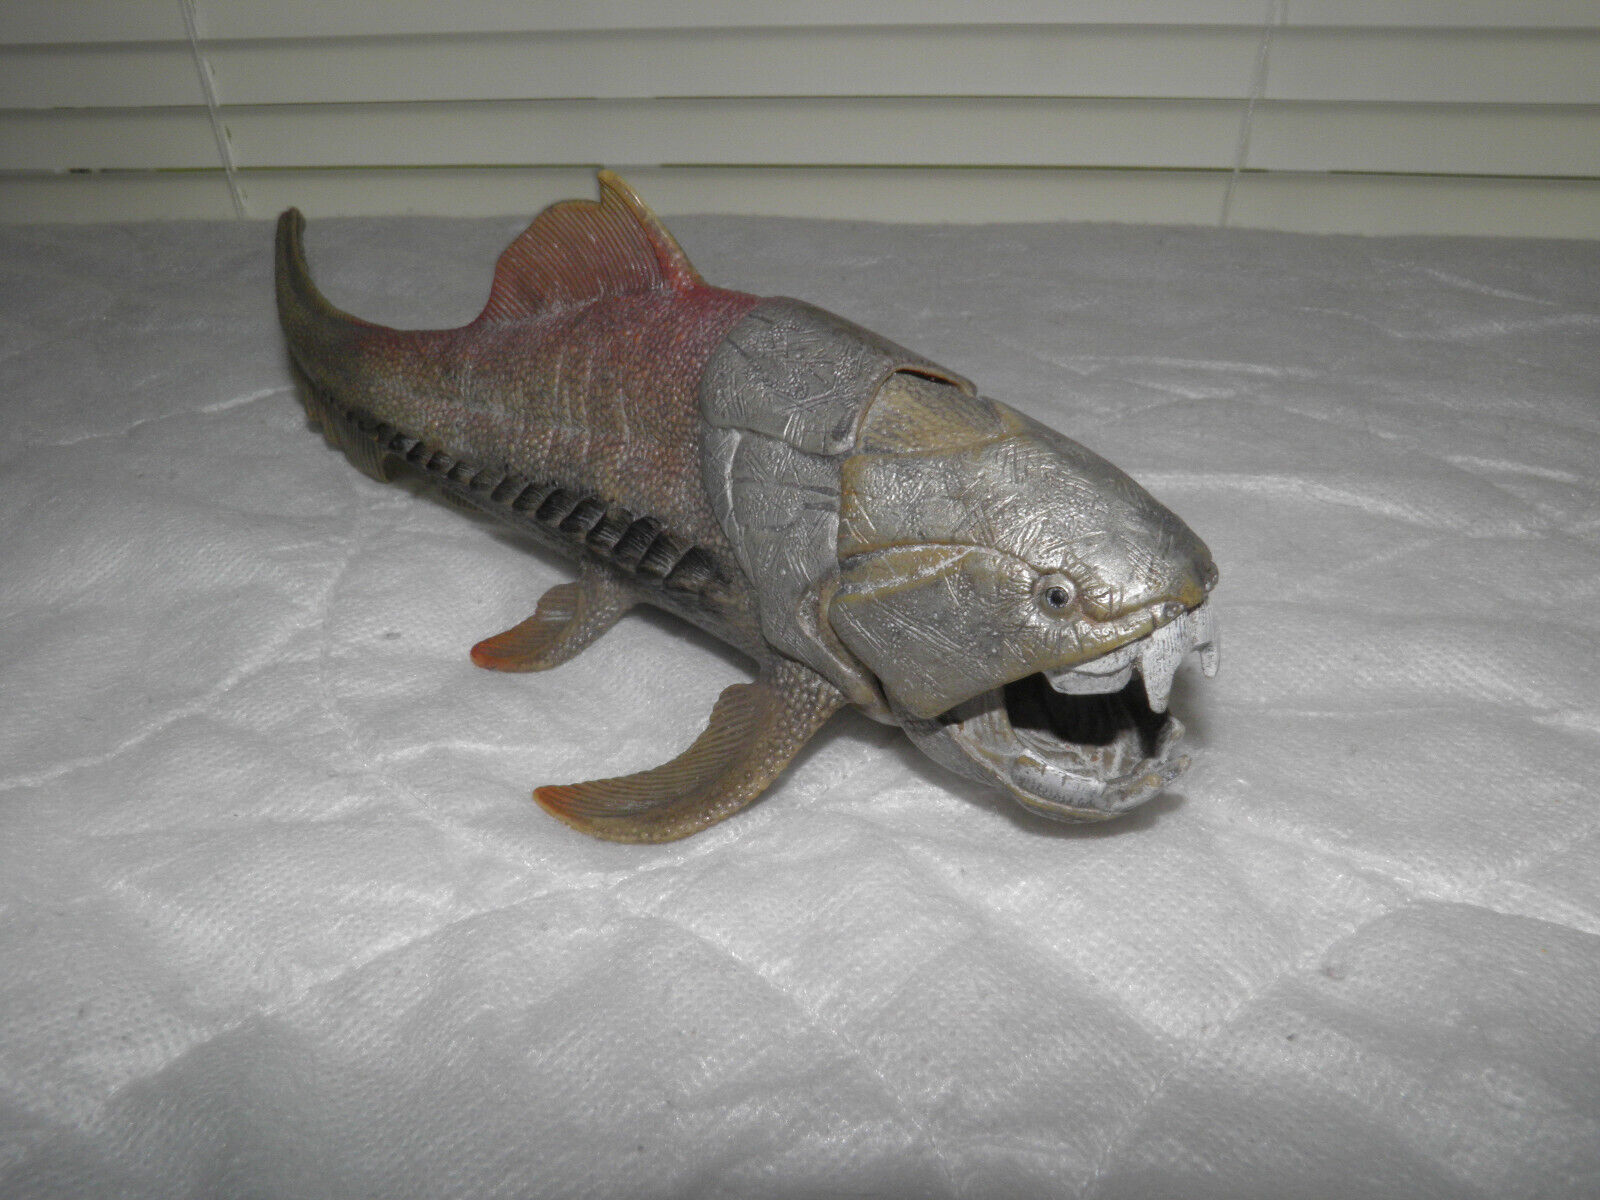 Schleich Dunkleosteus Prehistoric Dinosaur Fish Vinyl Figure 8” Articulating Jaw